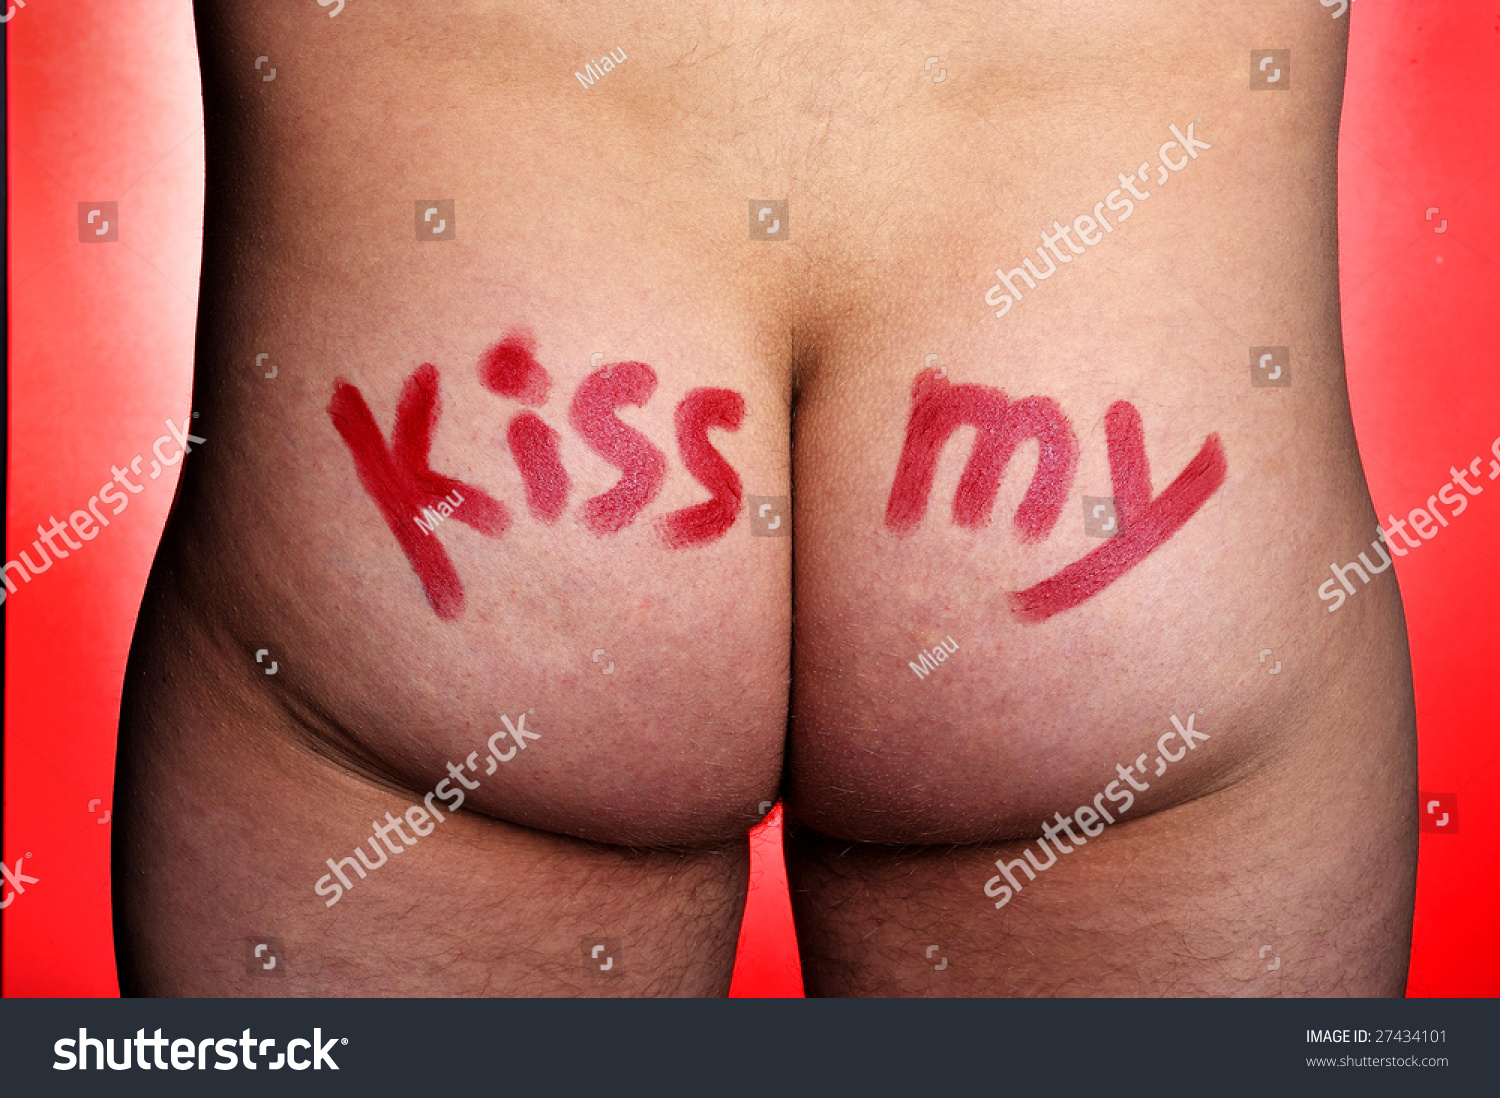 Kiss Asss 29